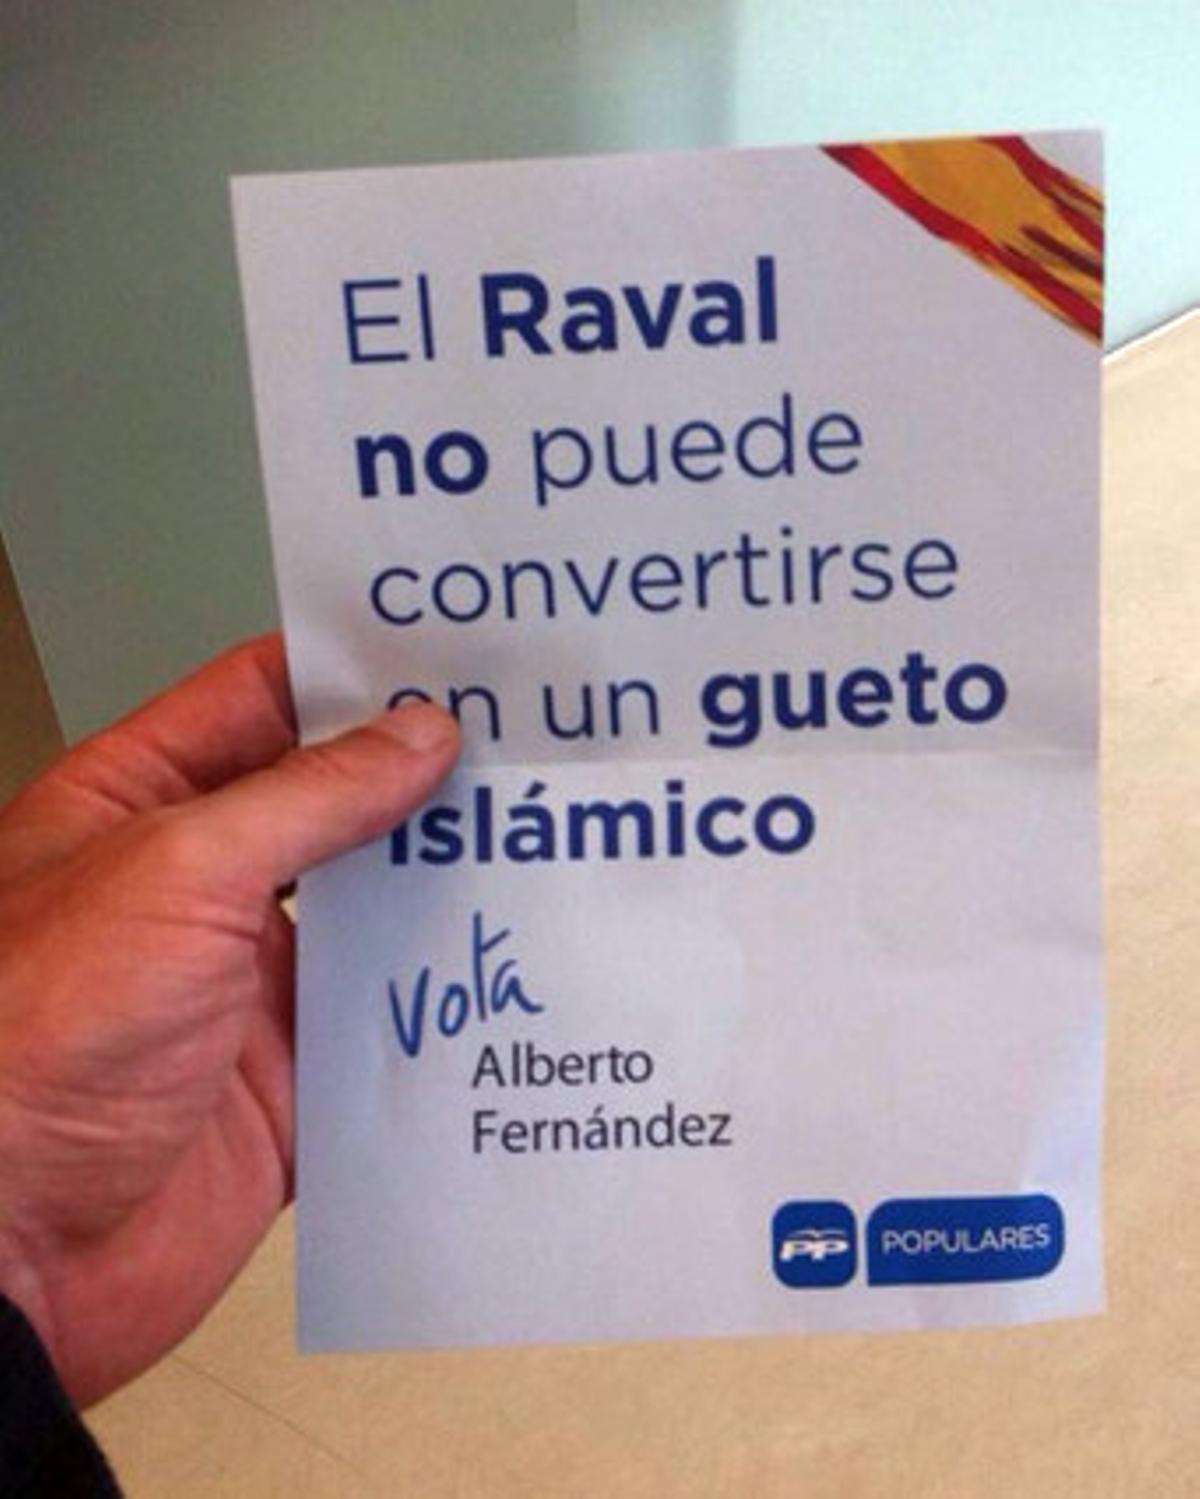 Cartell del PP en què els conservadors adverteixen que el Raval s’ha convertit en un gueto islàmic.